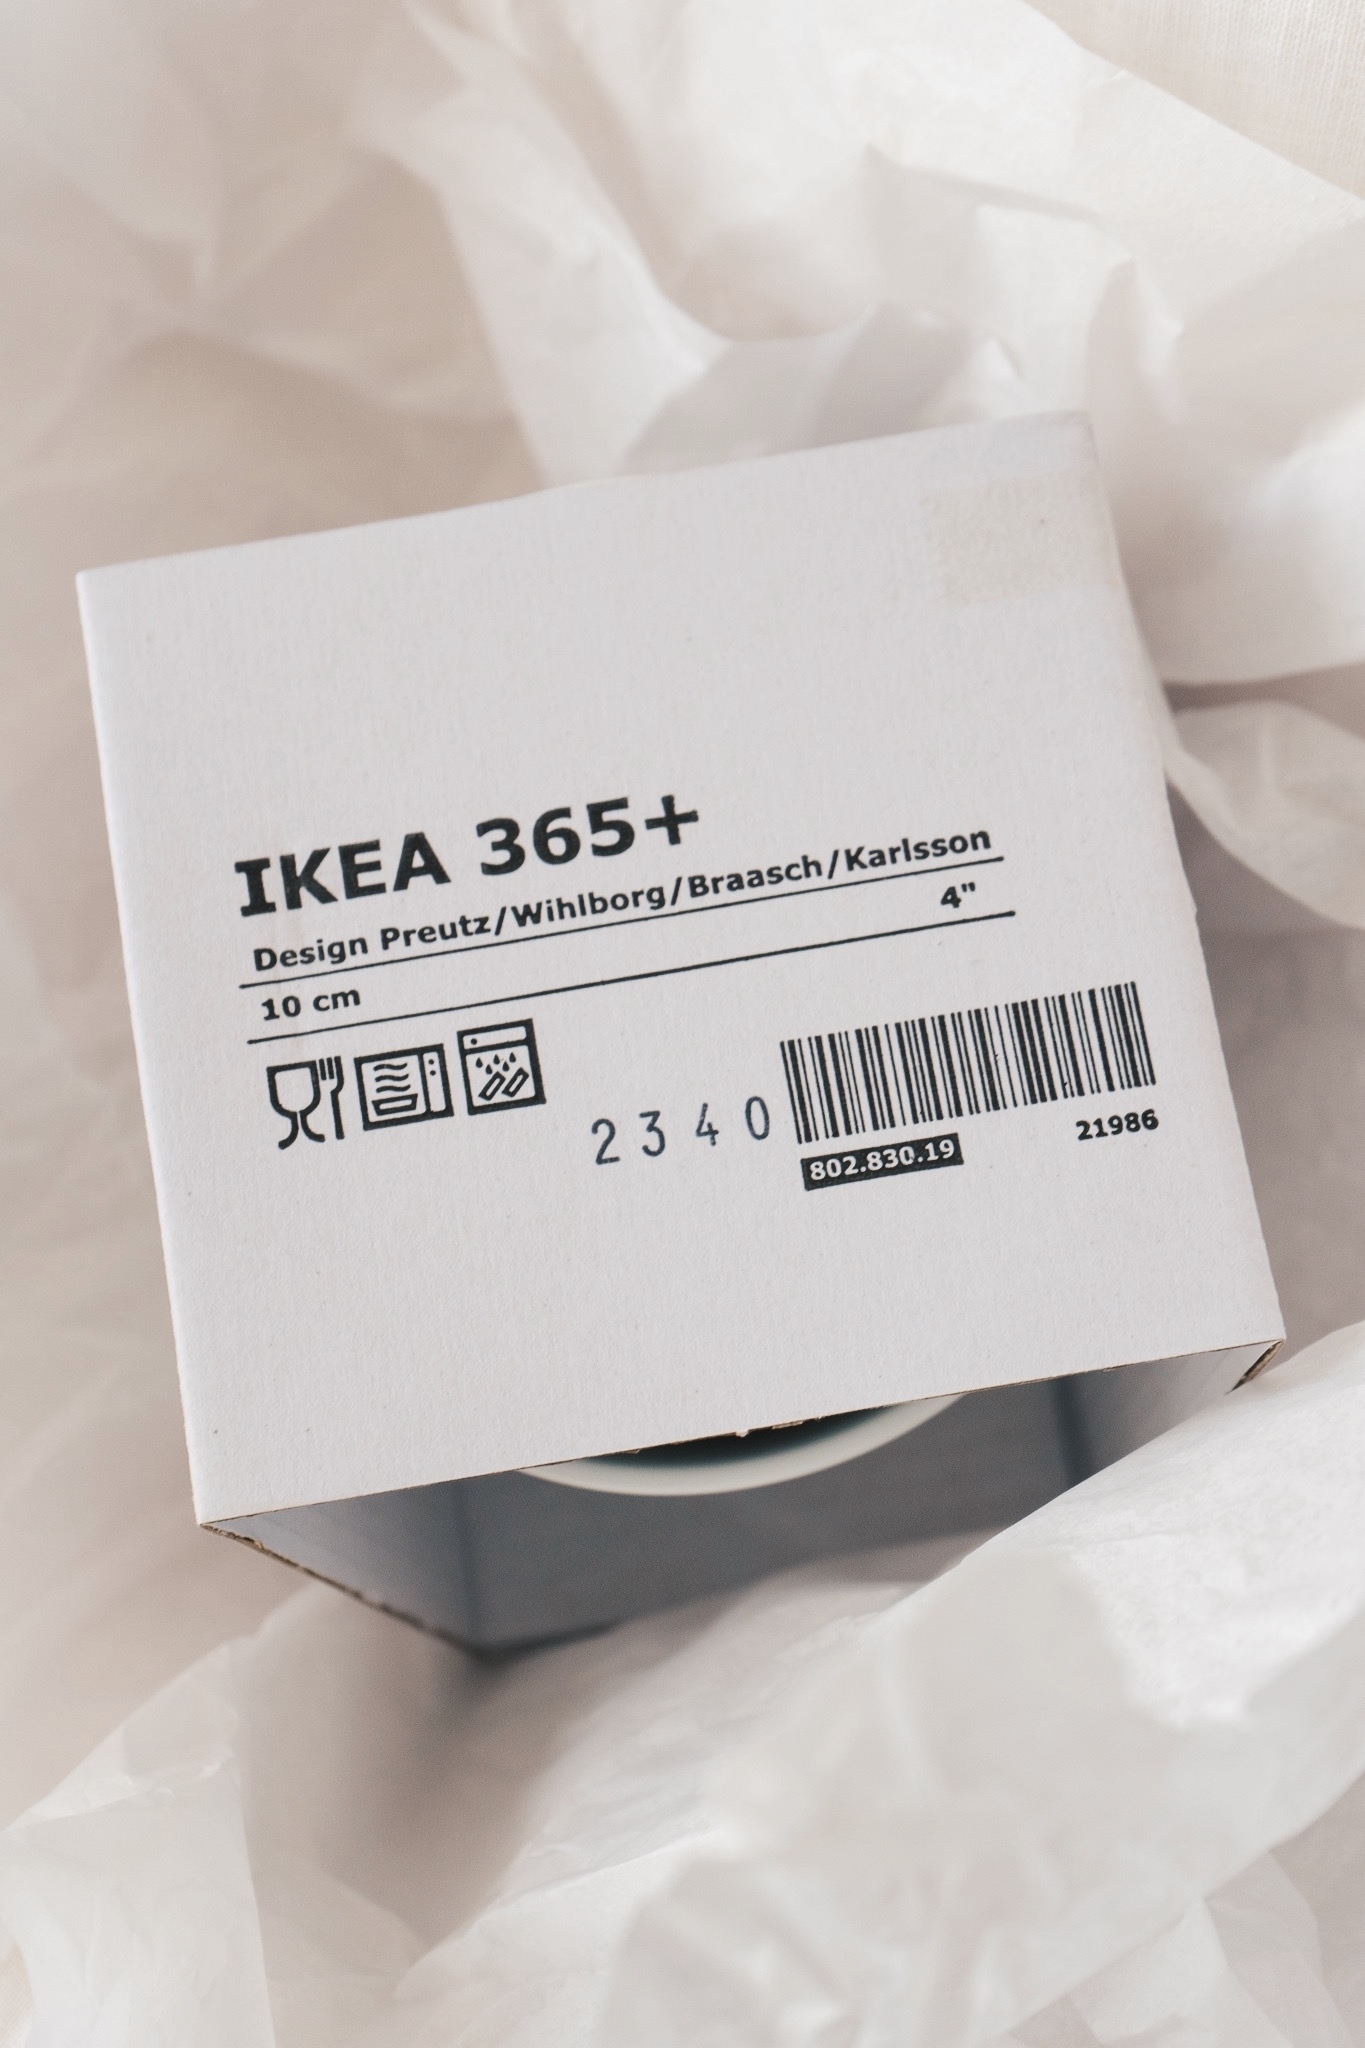 IKEA（イケア）のおすすめの食器「IKEA 365+ ボウル 10cm」